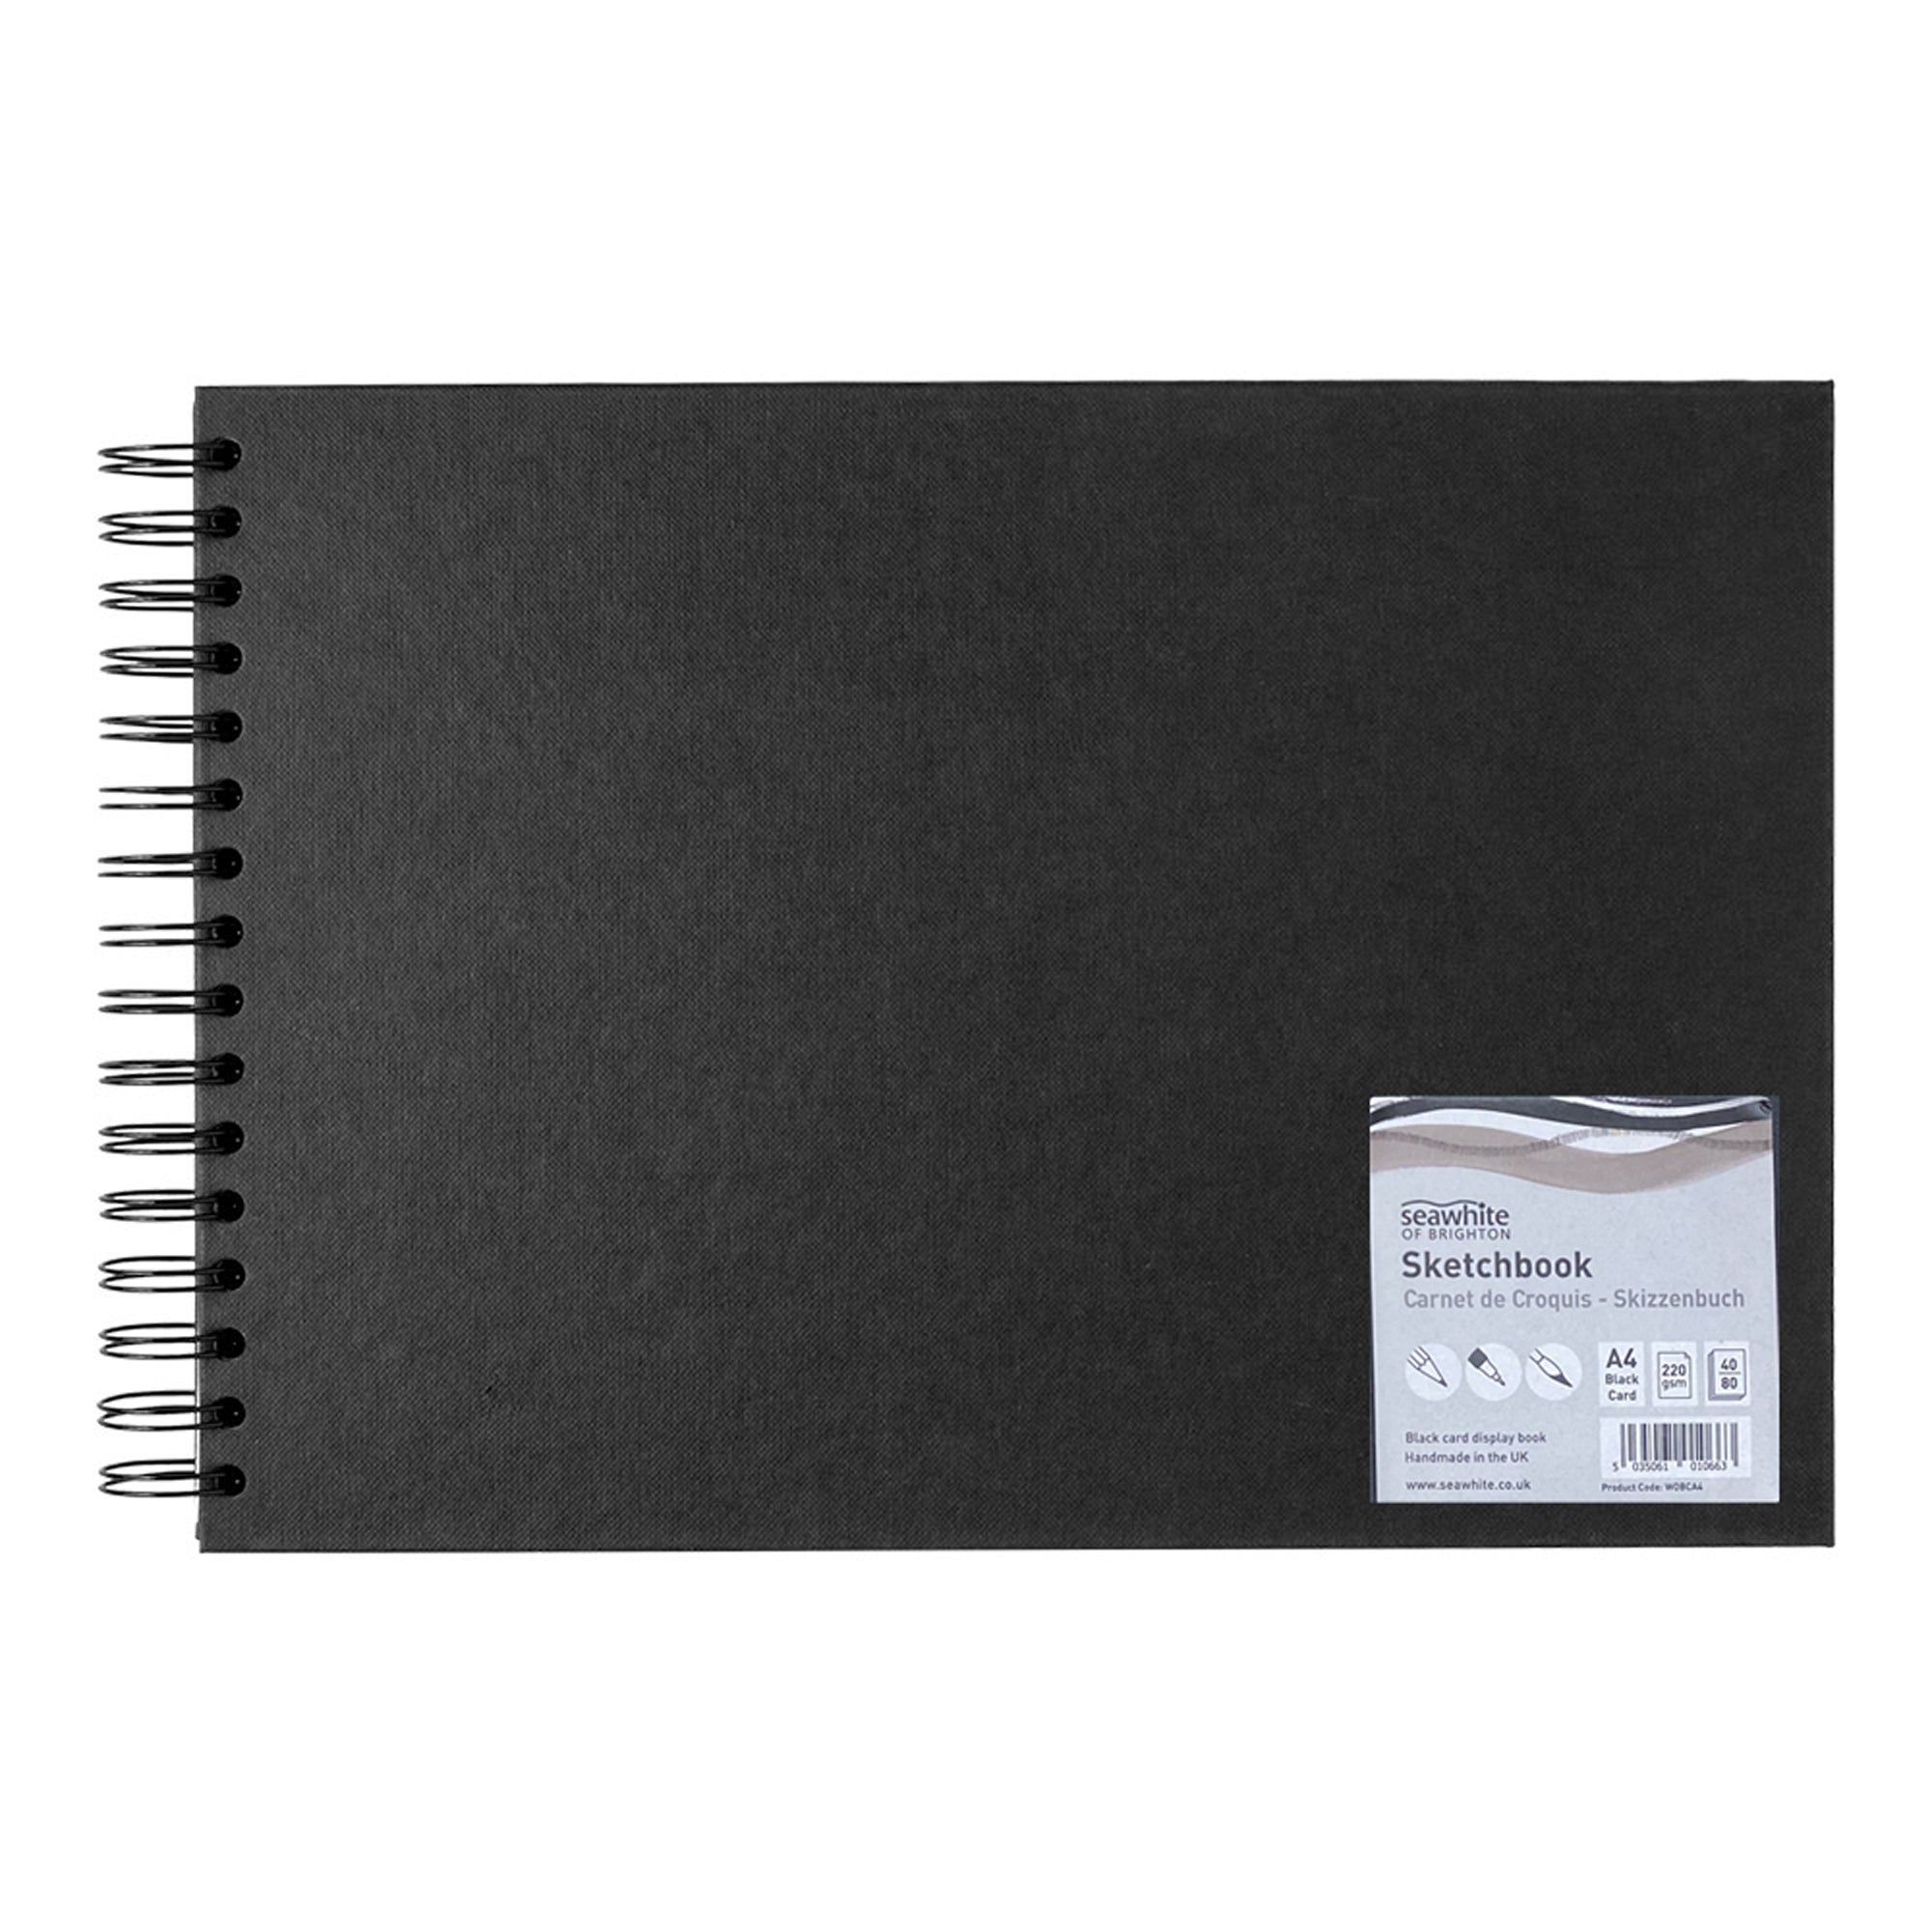 Seawhite Black Card Hardback Spiral Sketchbook - 220gsm - 40 sheets - A4 Landscape